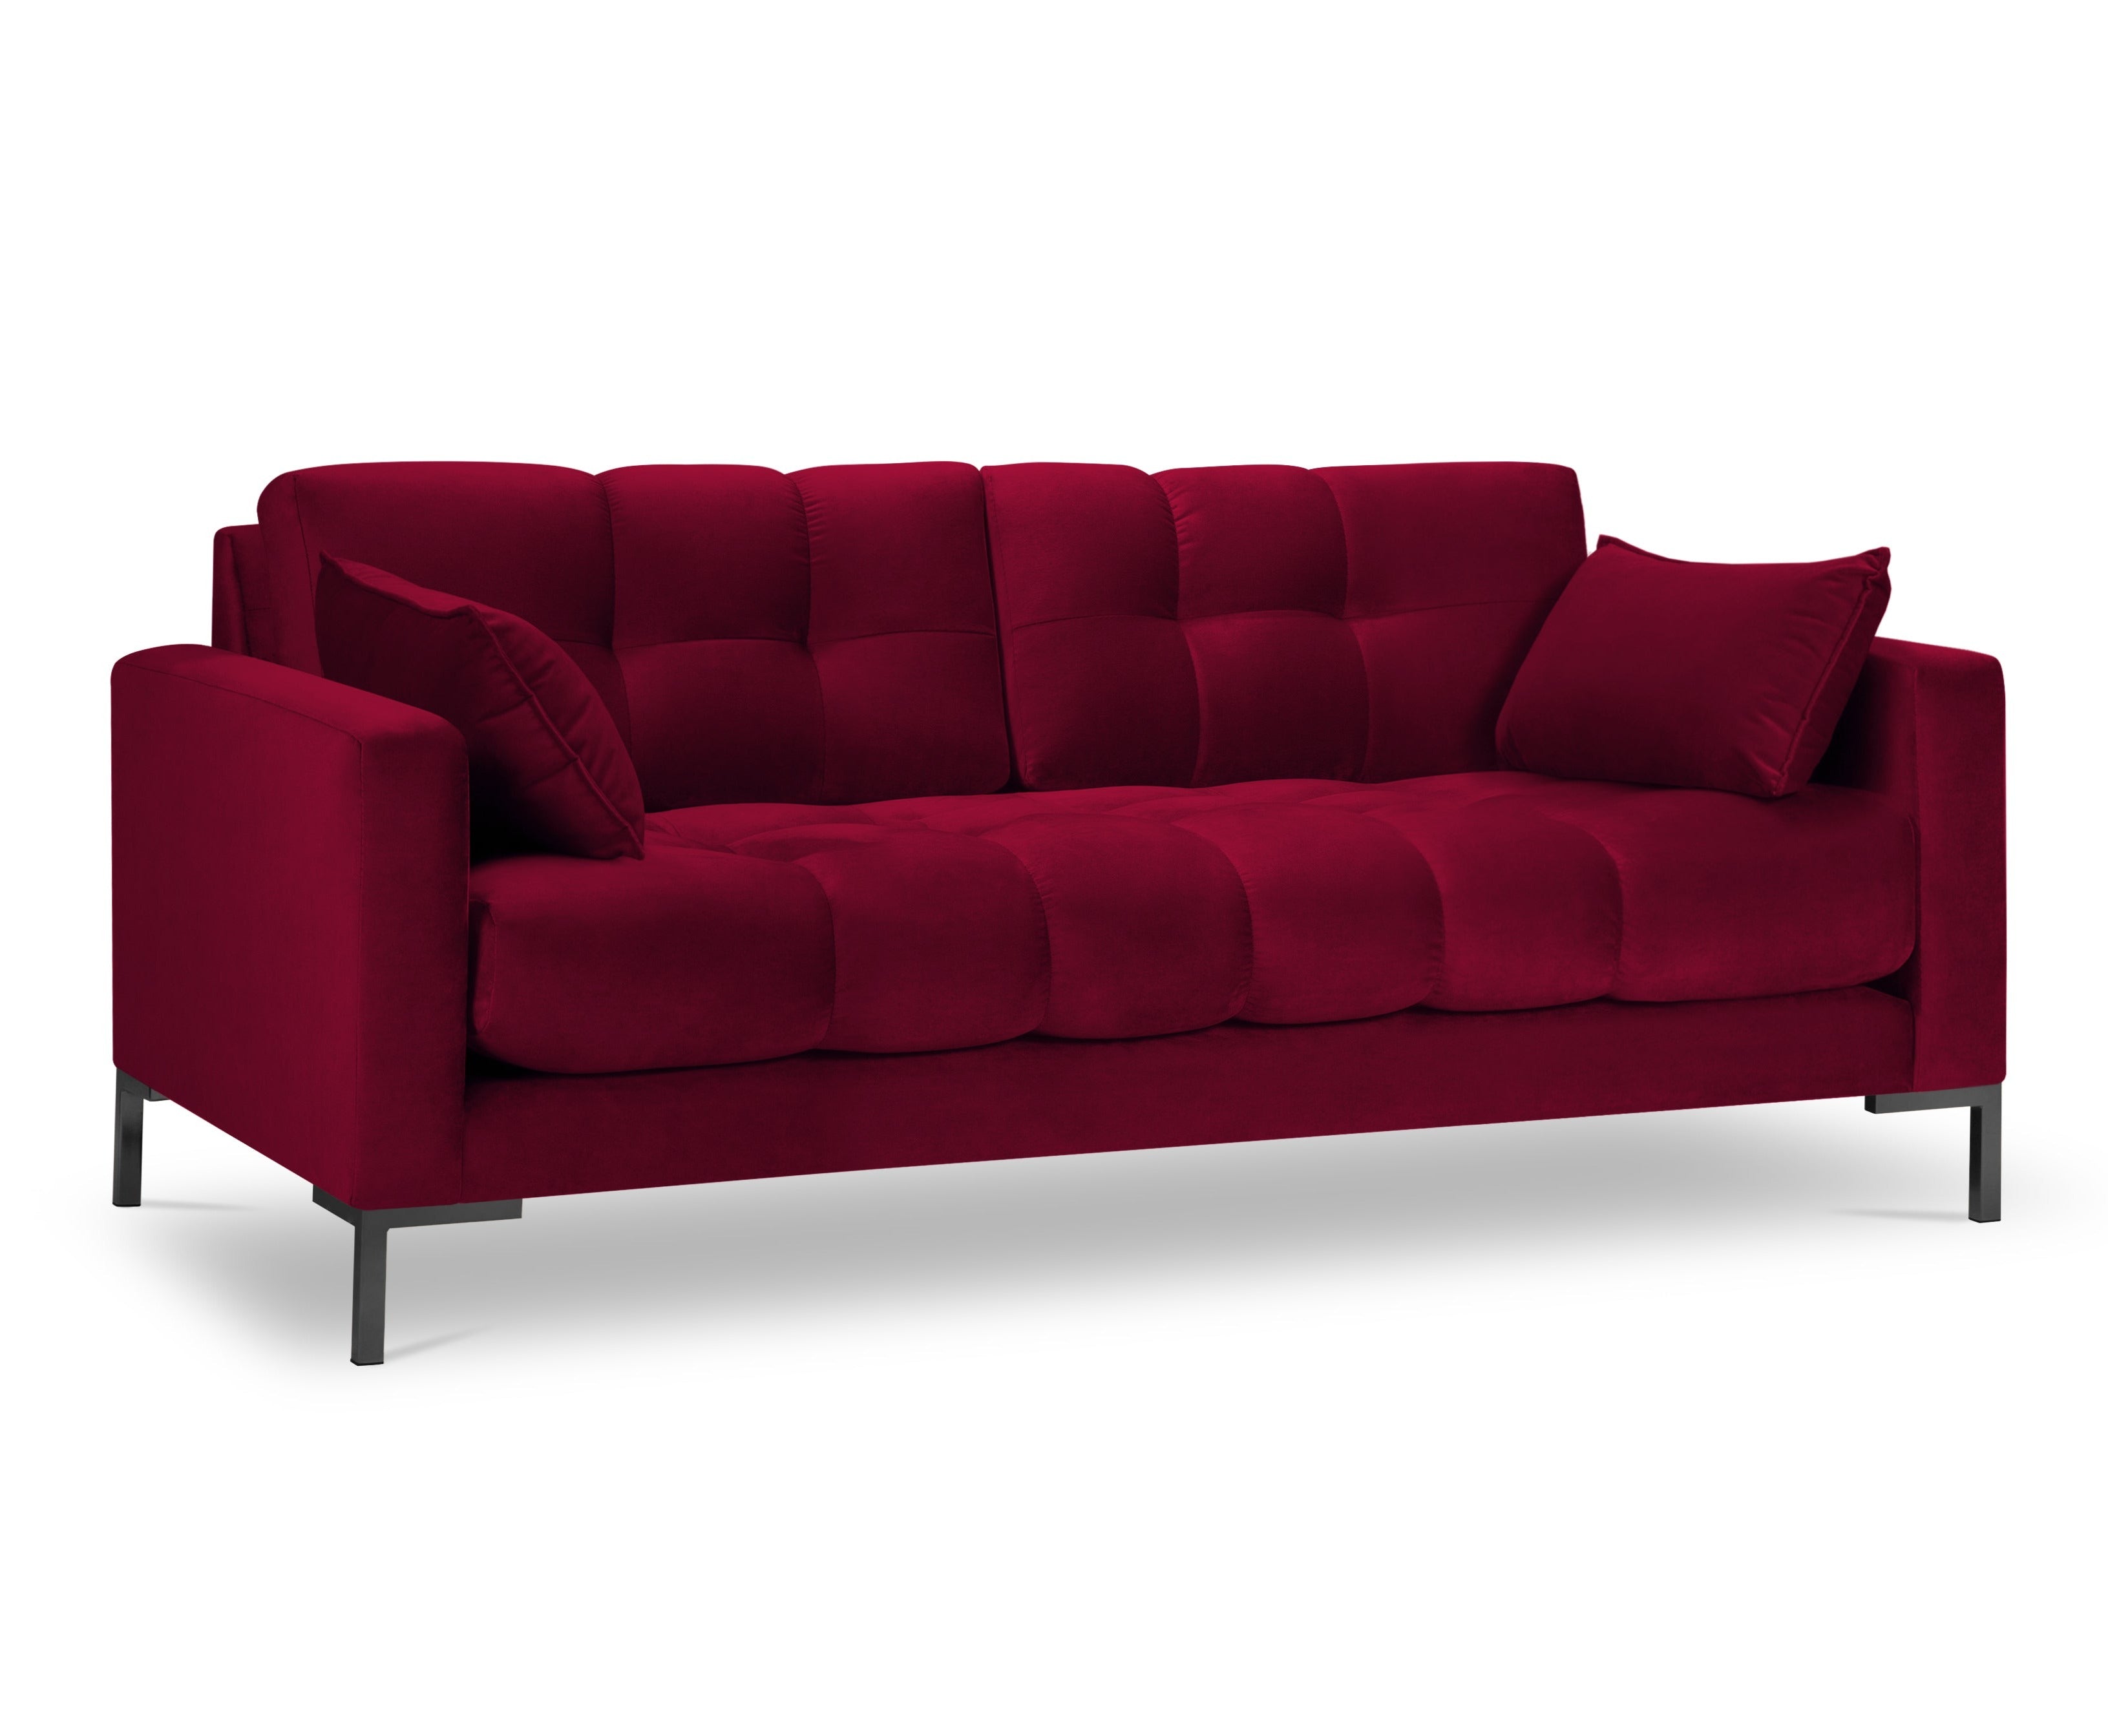 3-seater velvet red sofa